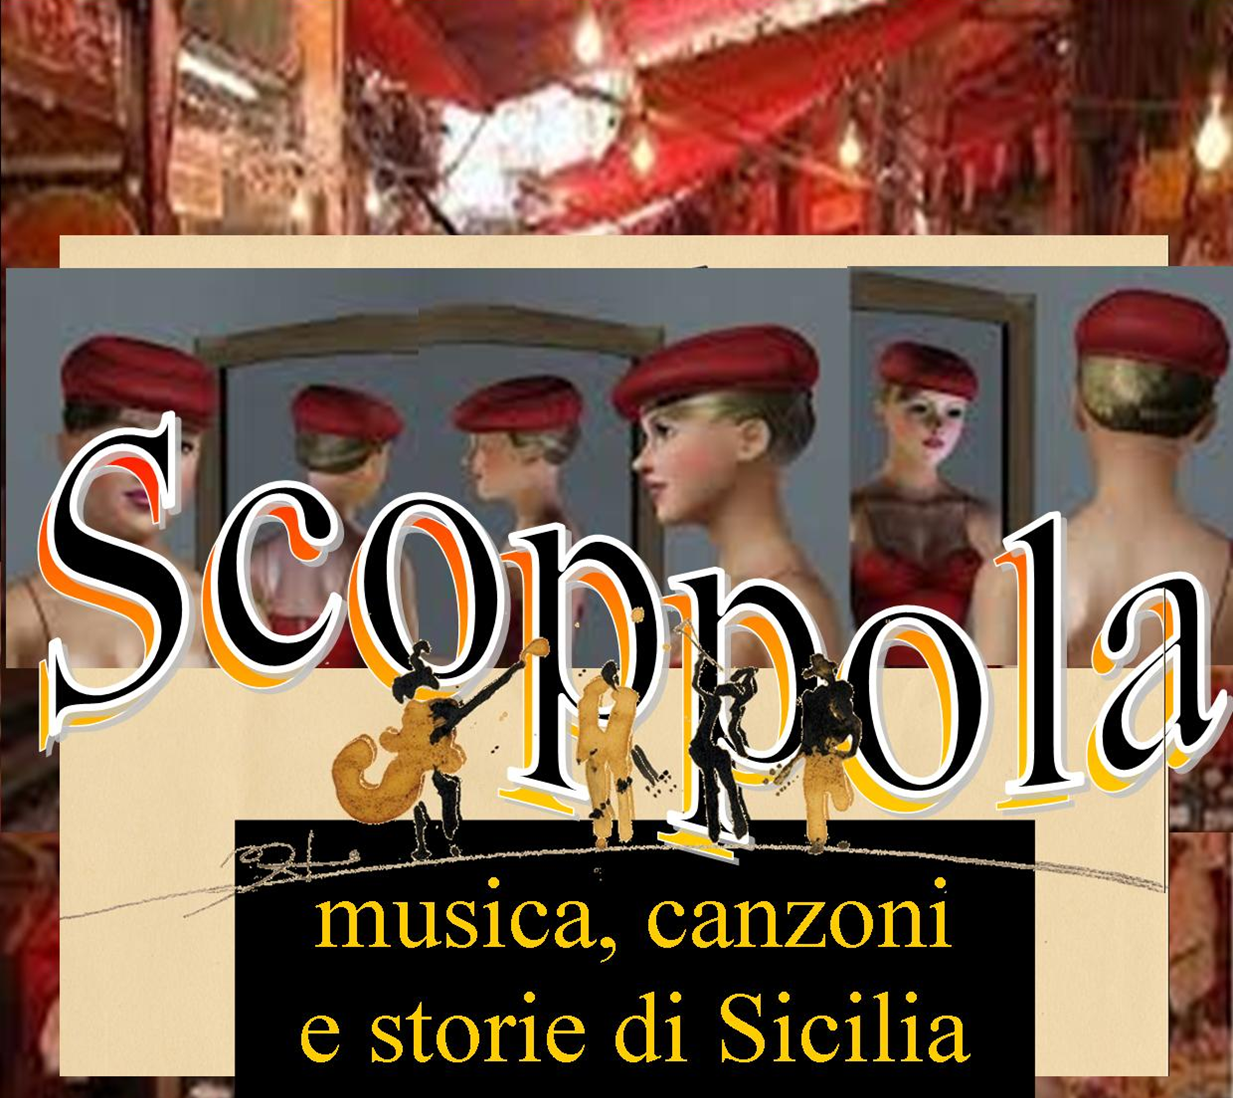 Brolo- Sabato il Casting per la Scoppola, musica, canzoni e storie di Sicilia